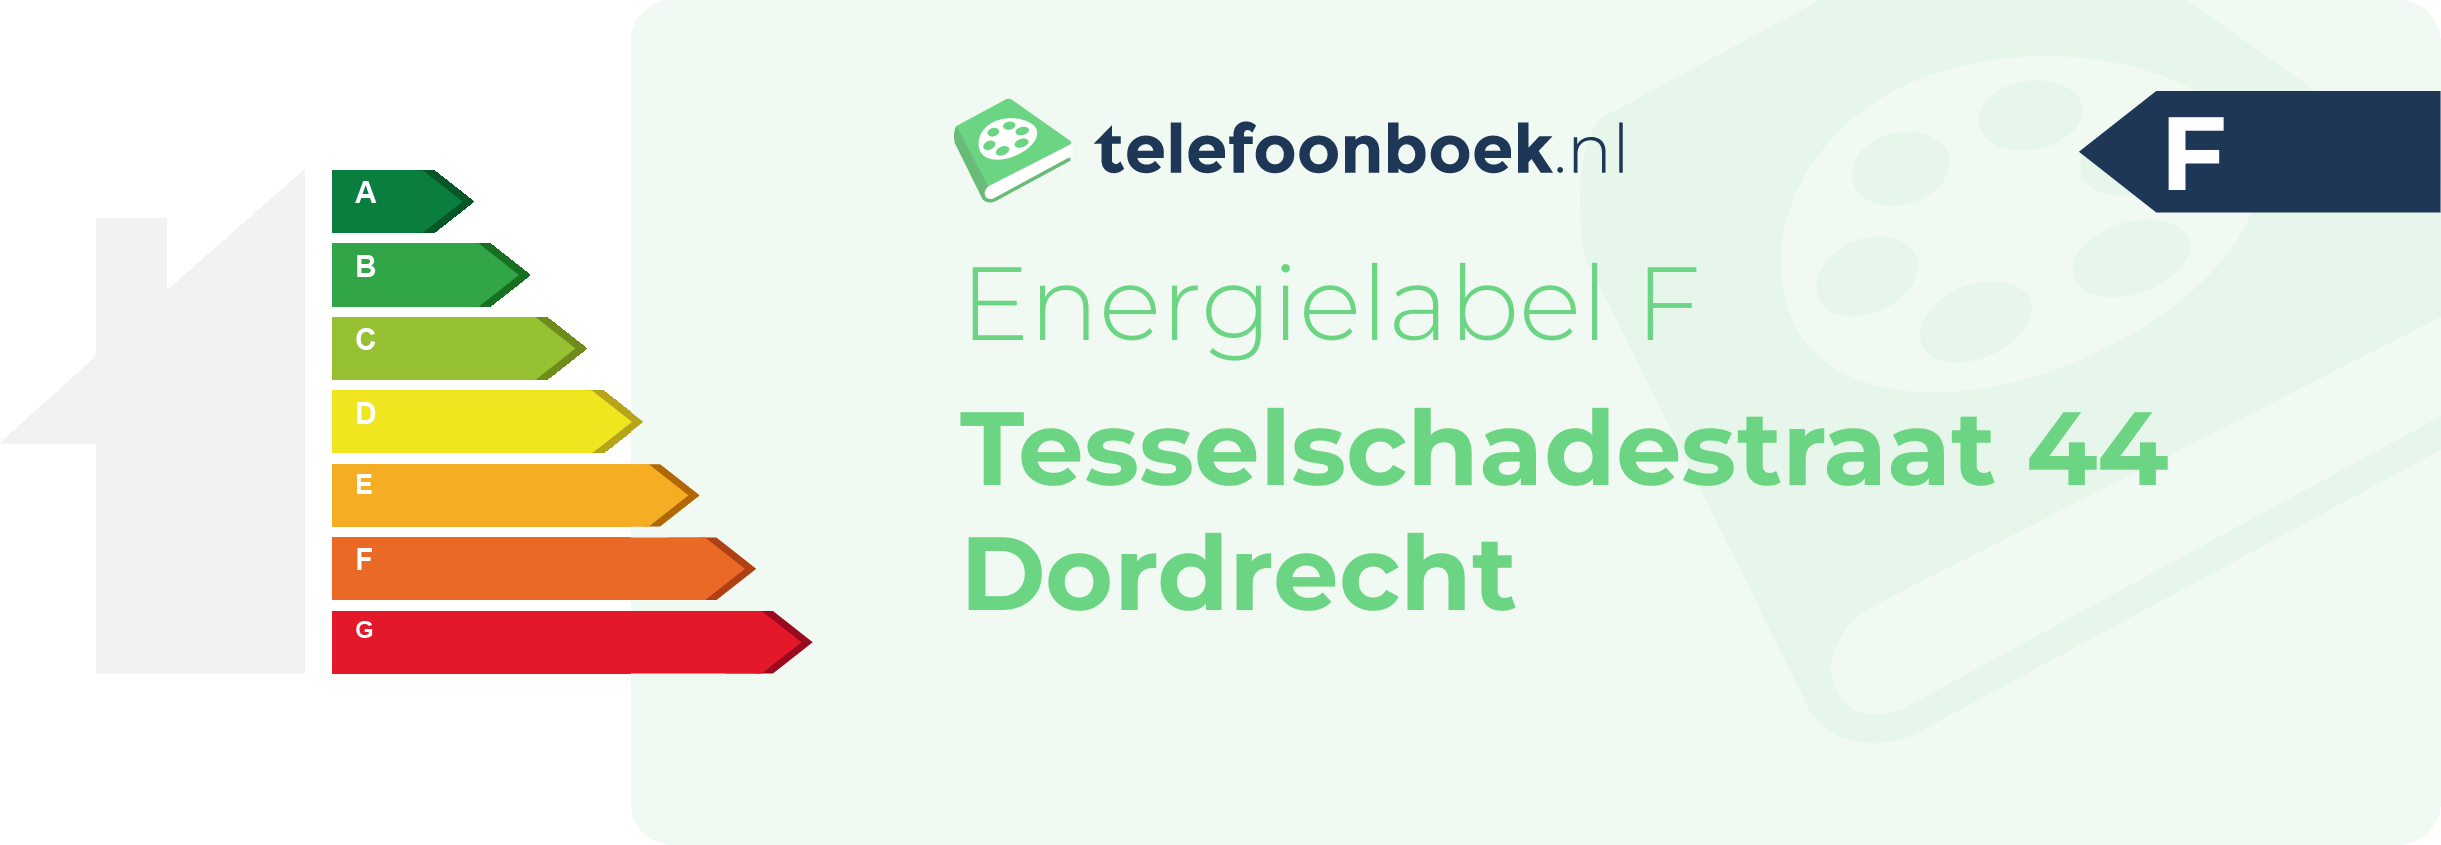 Energielabel Tesselschadestraat 44 Dordrecht